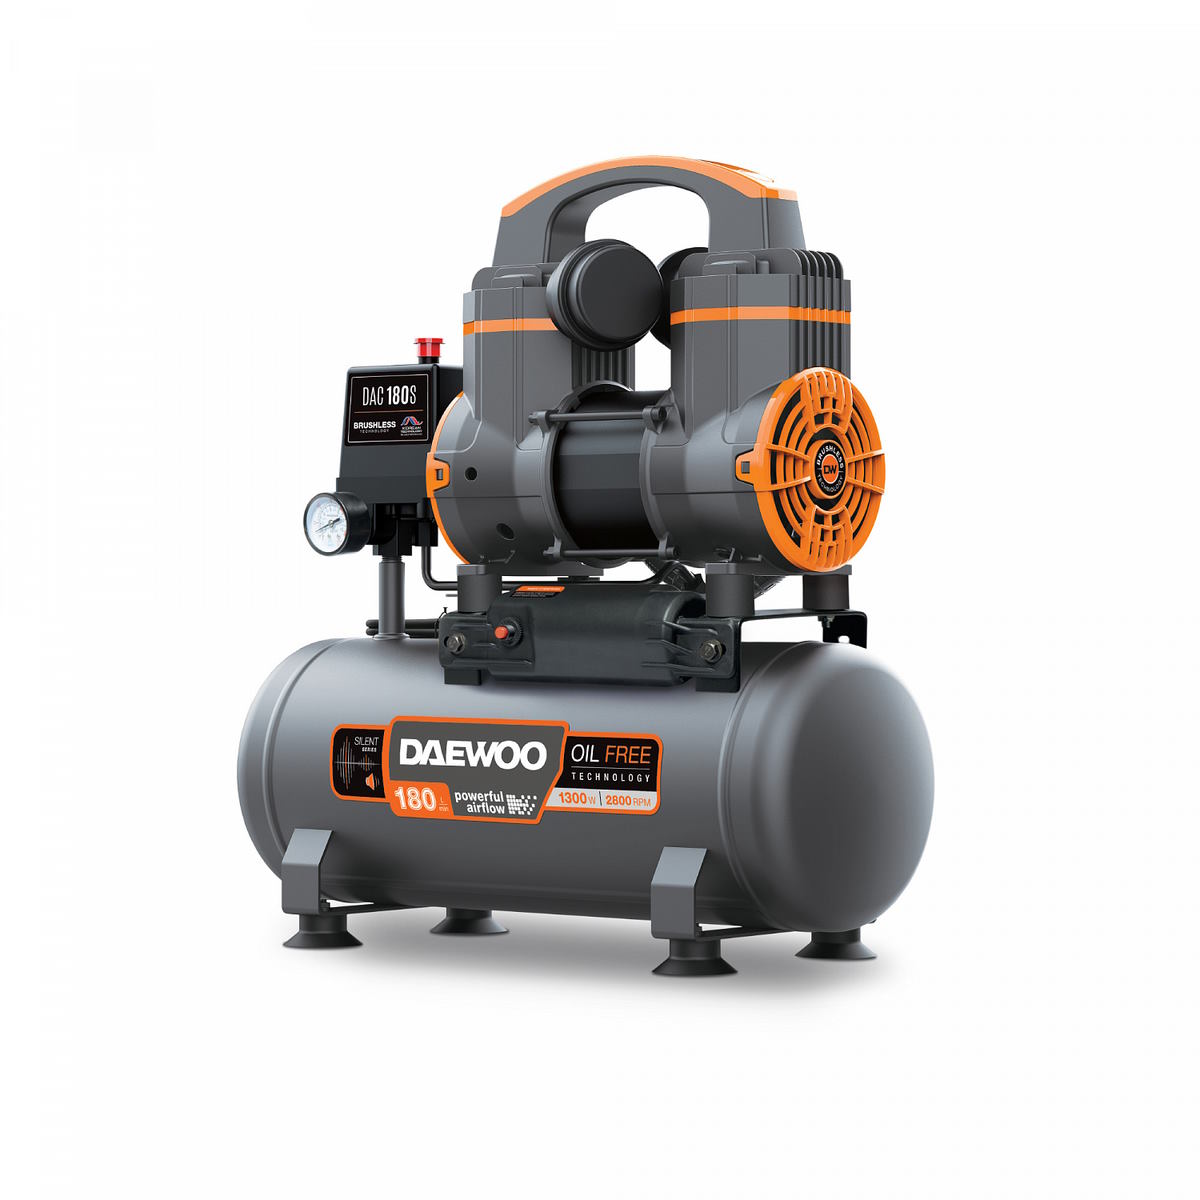 Поршневой компрессор DAEWOO DAC 180S 1.3 кВт 180 л/мин , цены в .